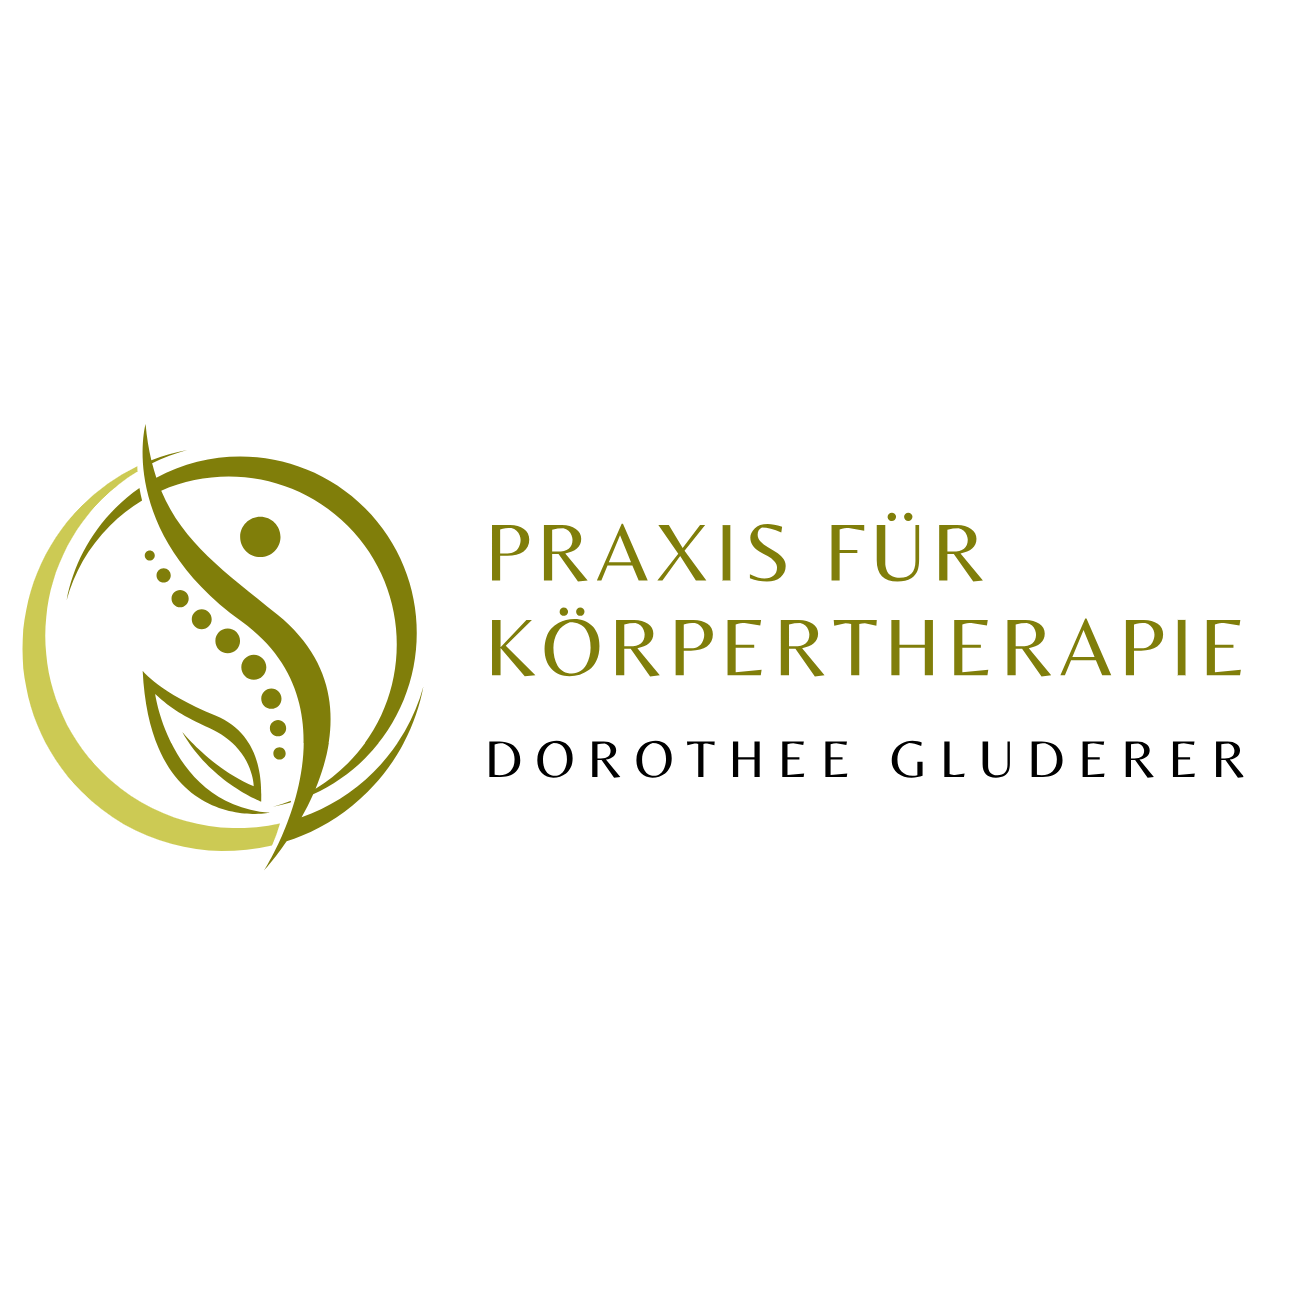 Praxis für Körpertherapie/POHLTHERAPIE, Dorothee Gluderer Logo